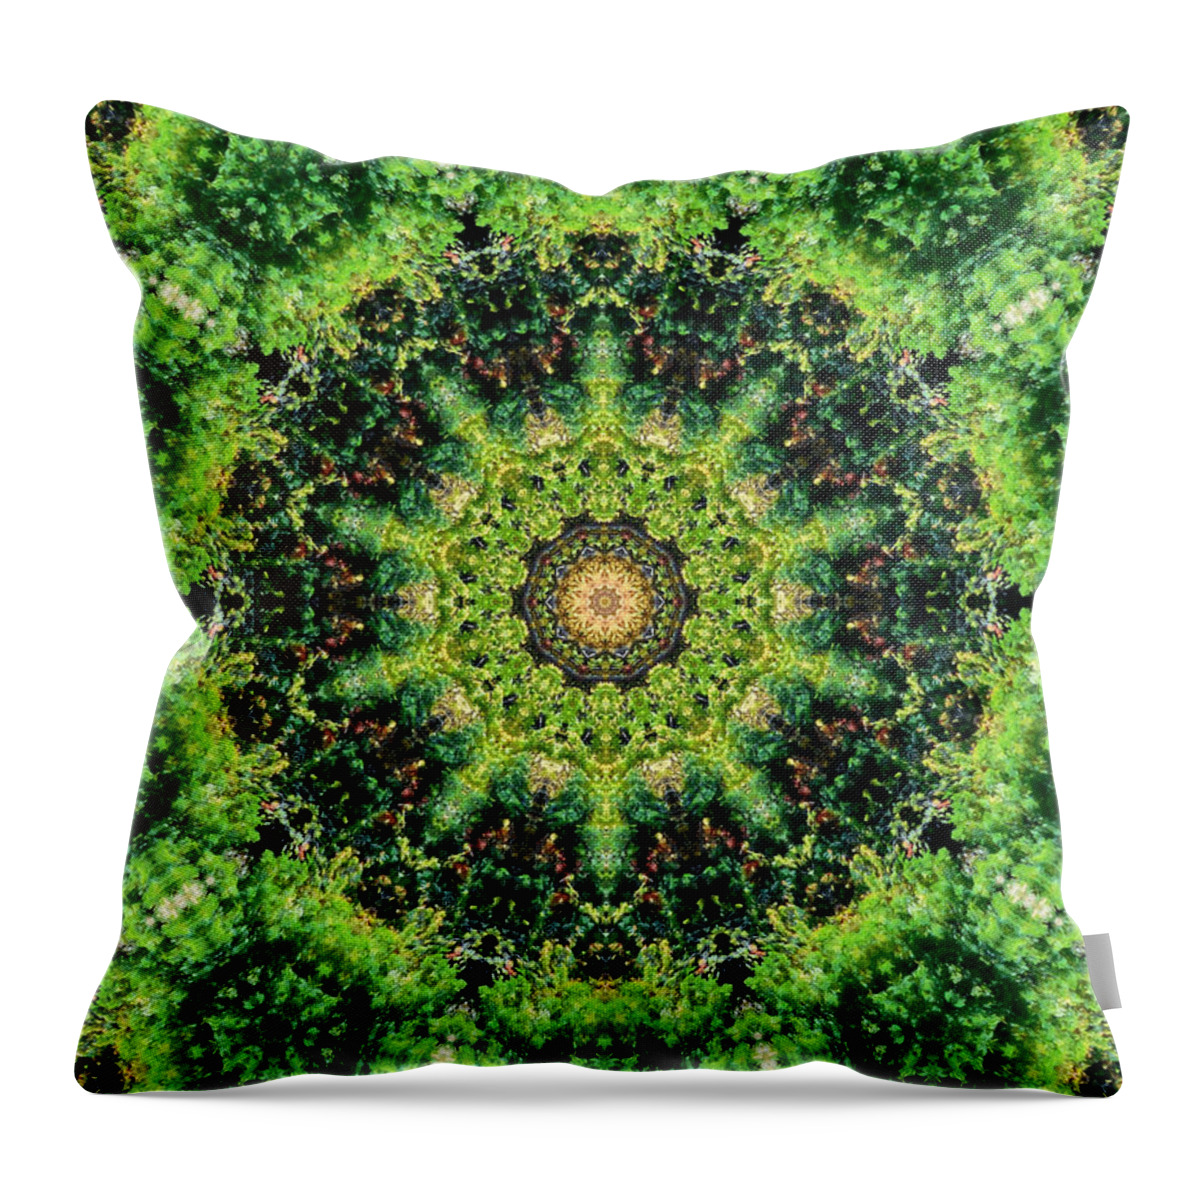 Mandala Kaleidoscopic Design Throw Pillow featuring the painting Mandala Kaleidoscopic Design 3 by Jeelan Clark